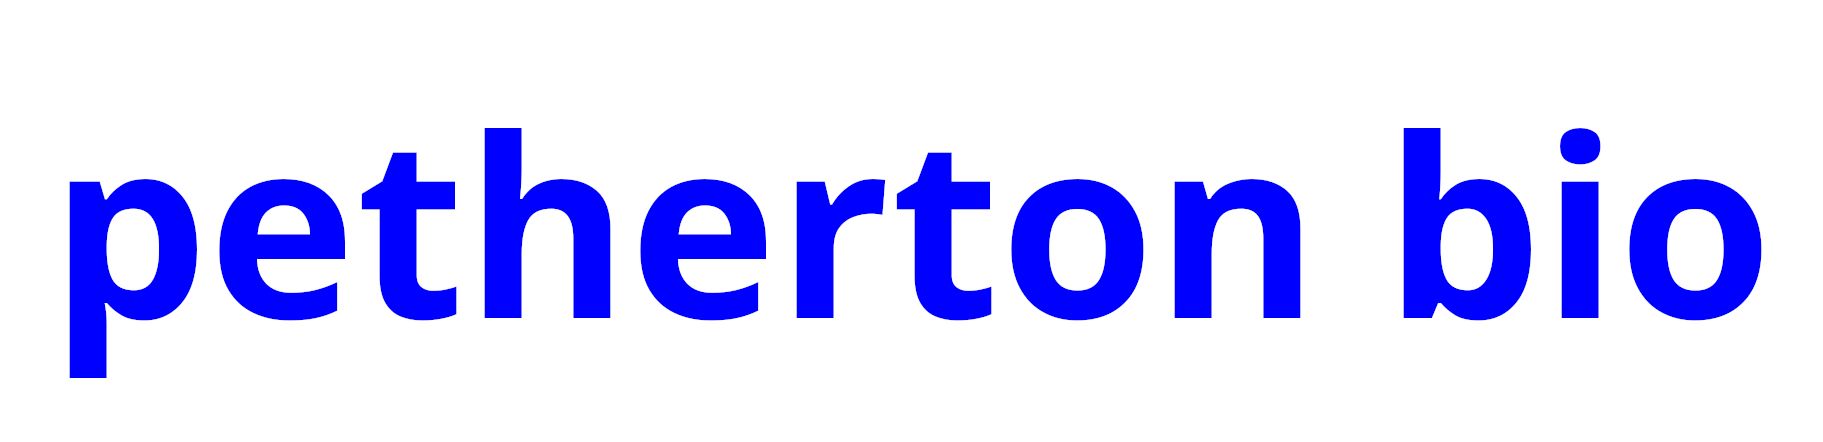 Petherton Bio